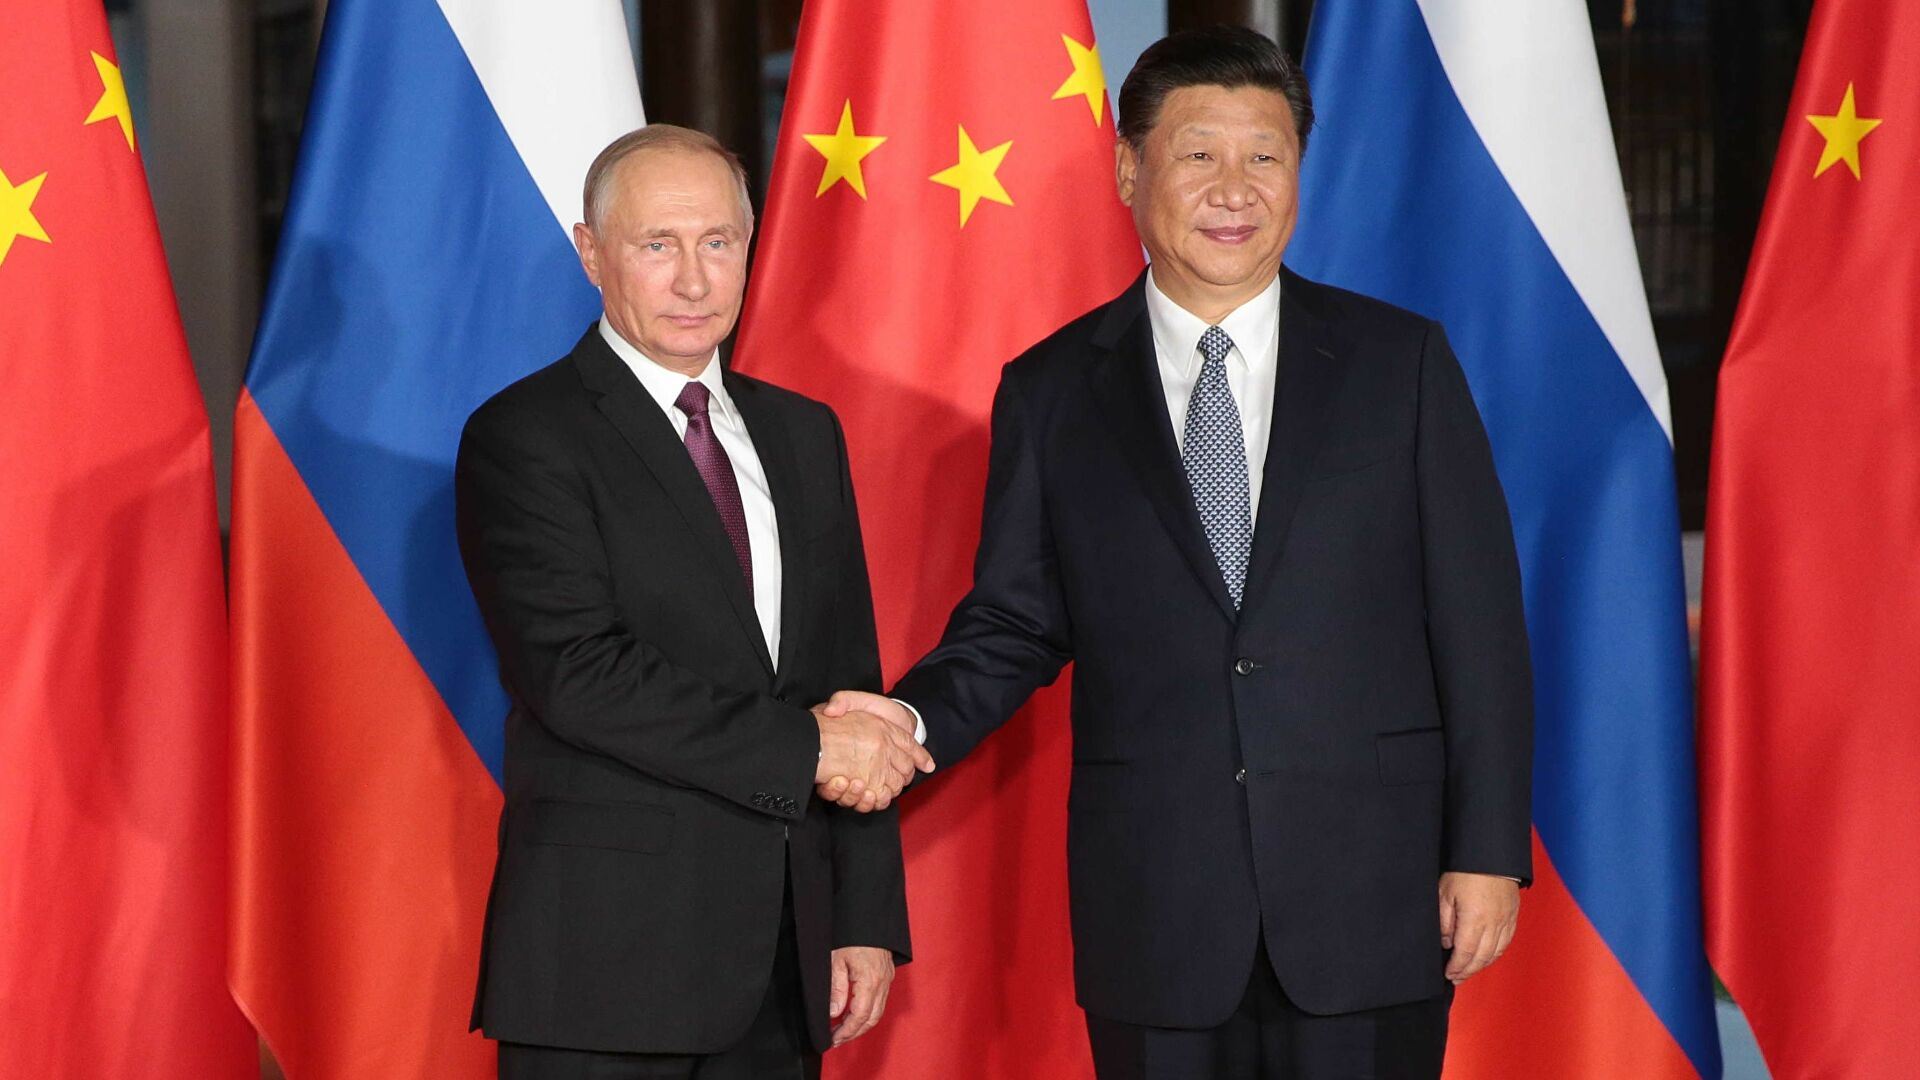 بين روسيا والصين.. خط جديد!
